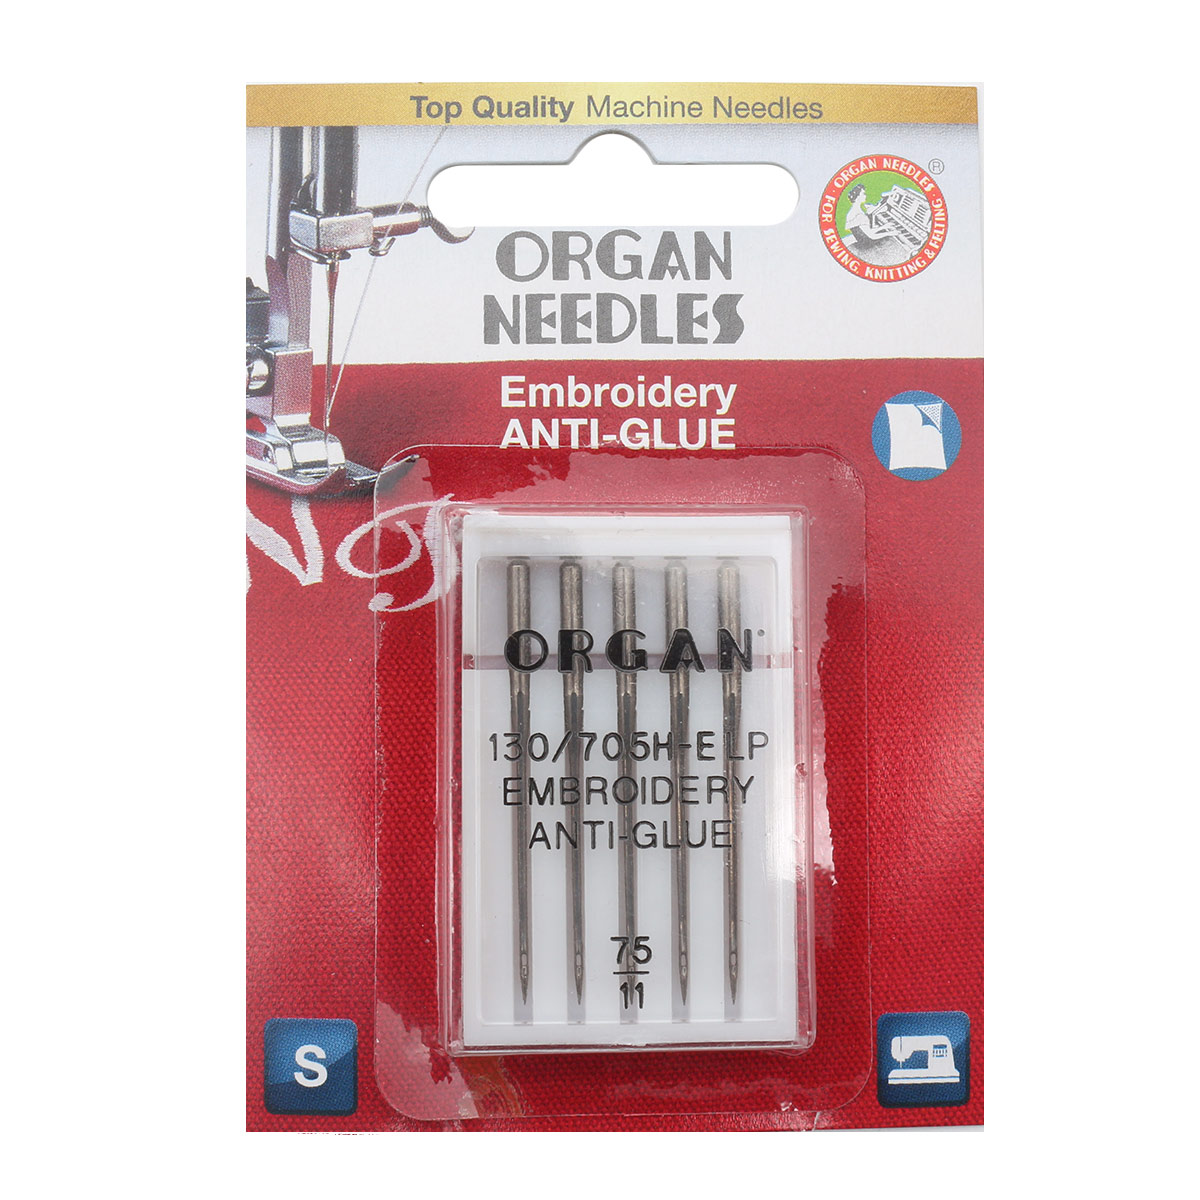 ORGAN иглы вышивальные Anti-Glue 5/75 Blister набор для вышивания panna букет ирисов